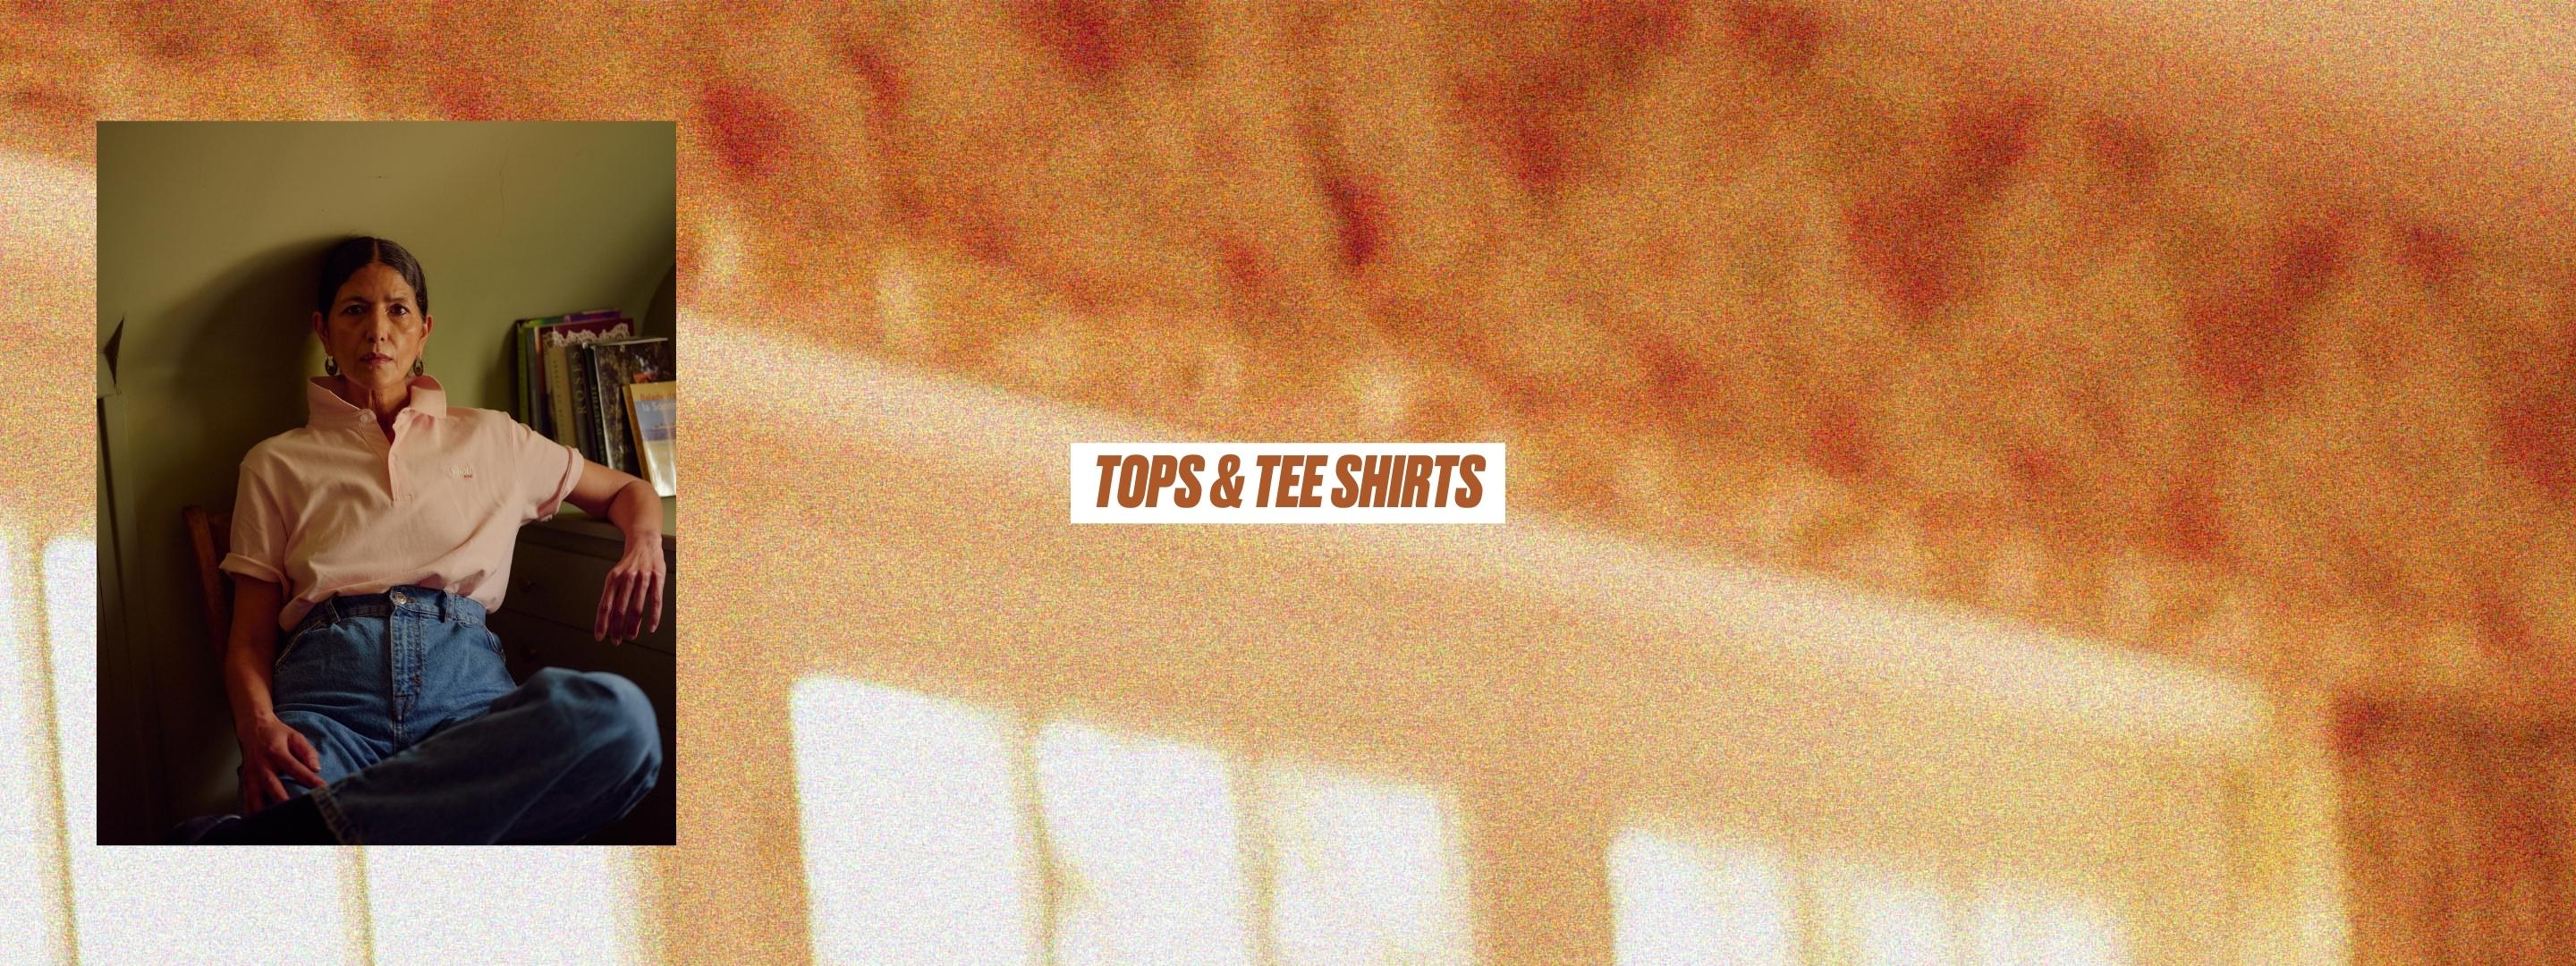 Tops & Tee shirts